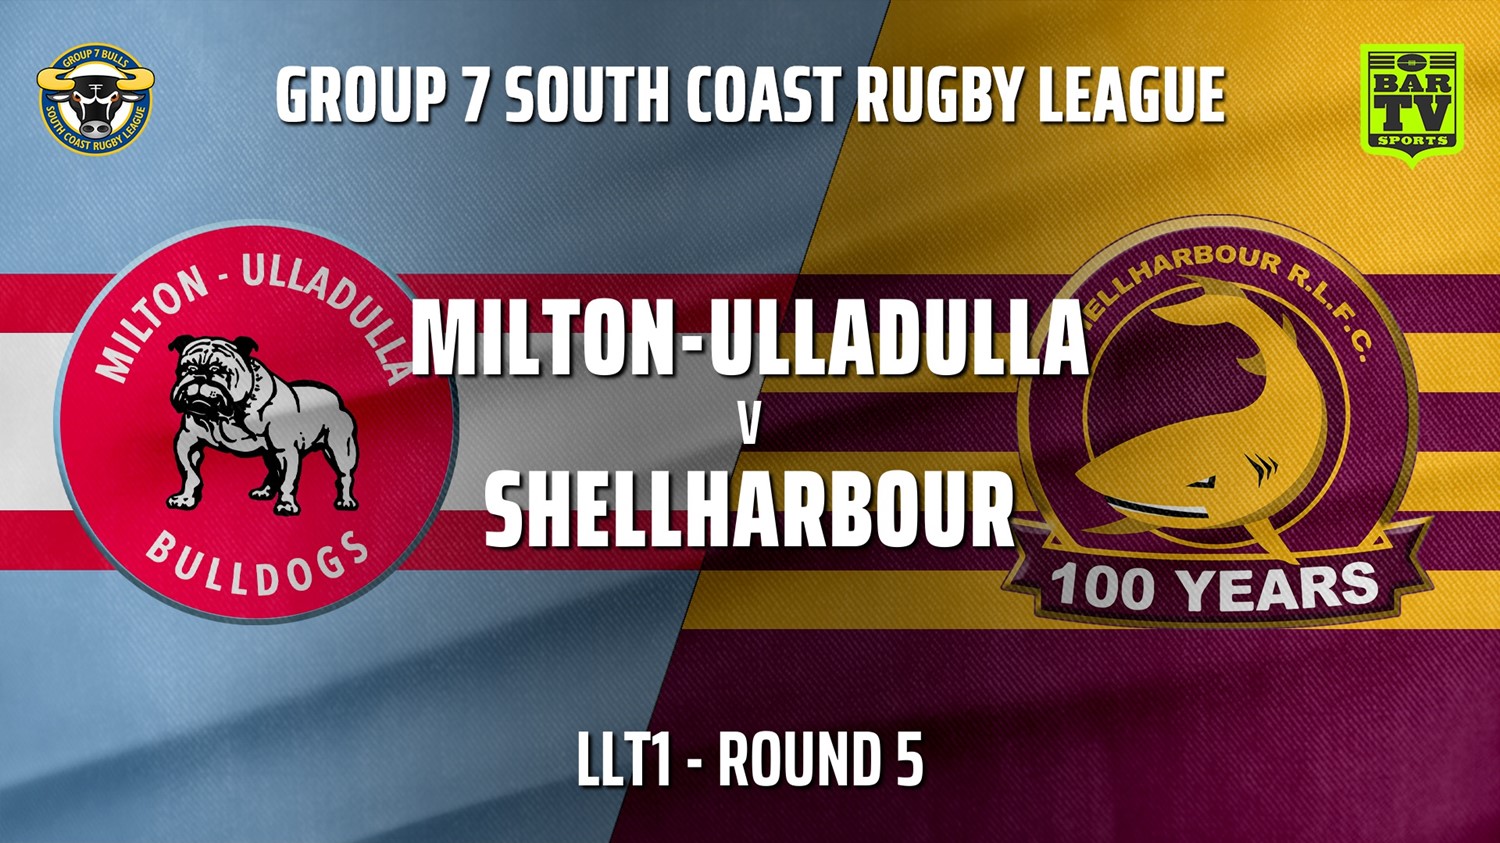 210516-Group 7 RL Round 5 - LLT1 - Milton-Ulladulla Bulldogs v Shellharbour Sharks Slate Image